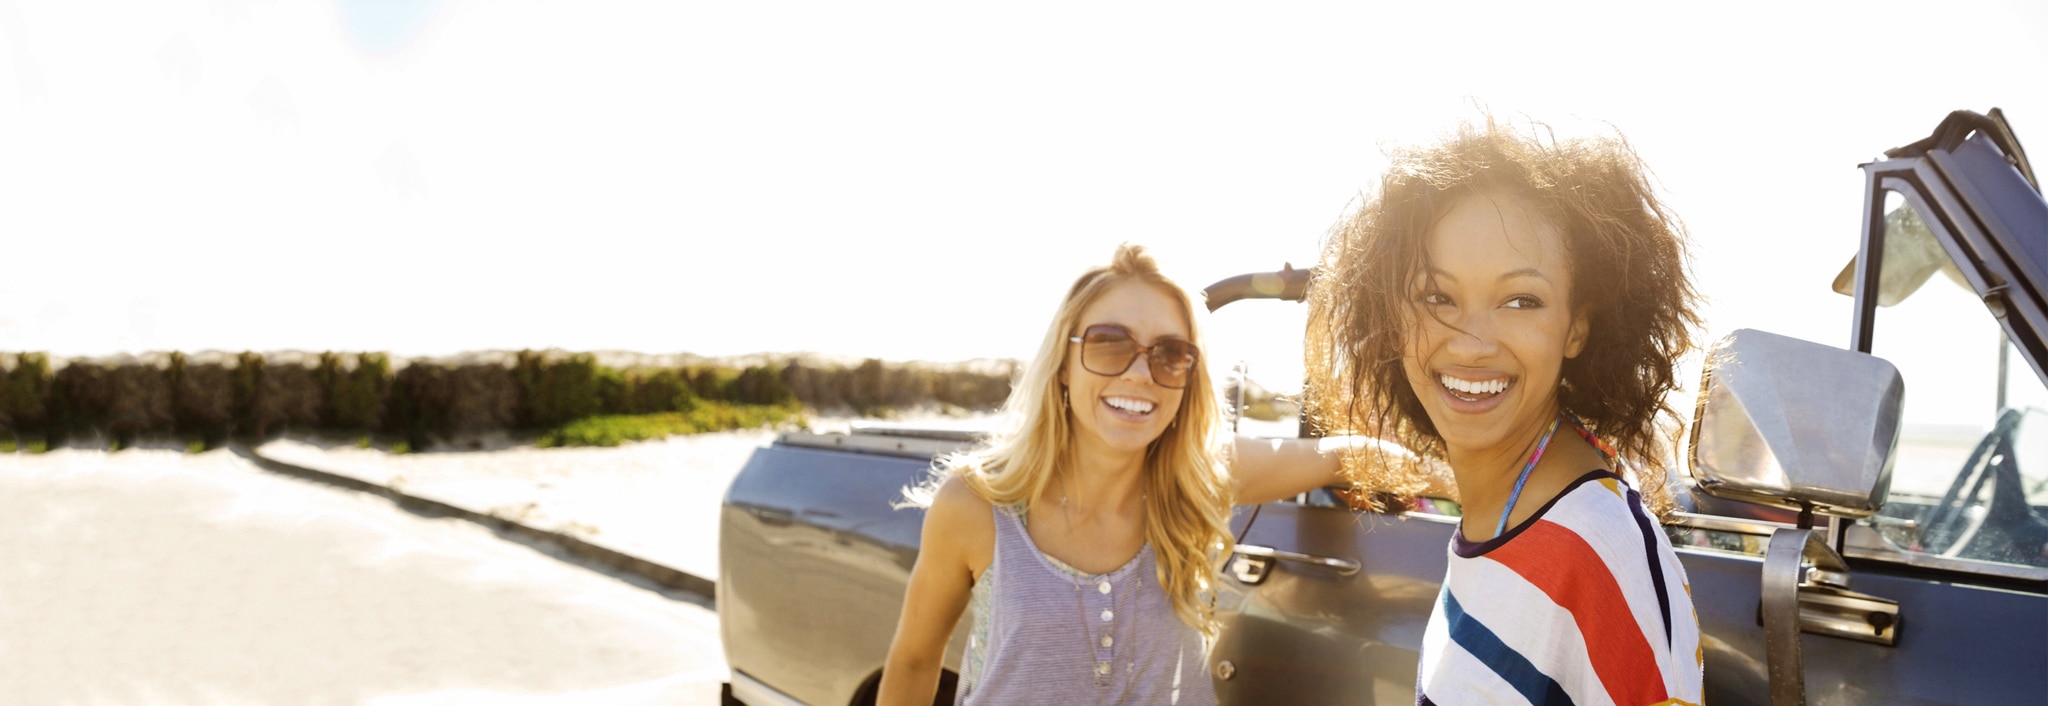 Due donne sorridenti, una con capelli lisci, asciutti, l’altra con capelli ricci, asciutti, vicino a un’auto.